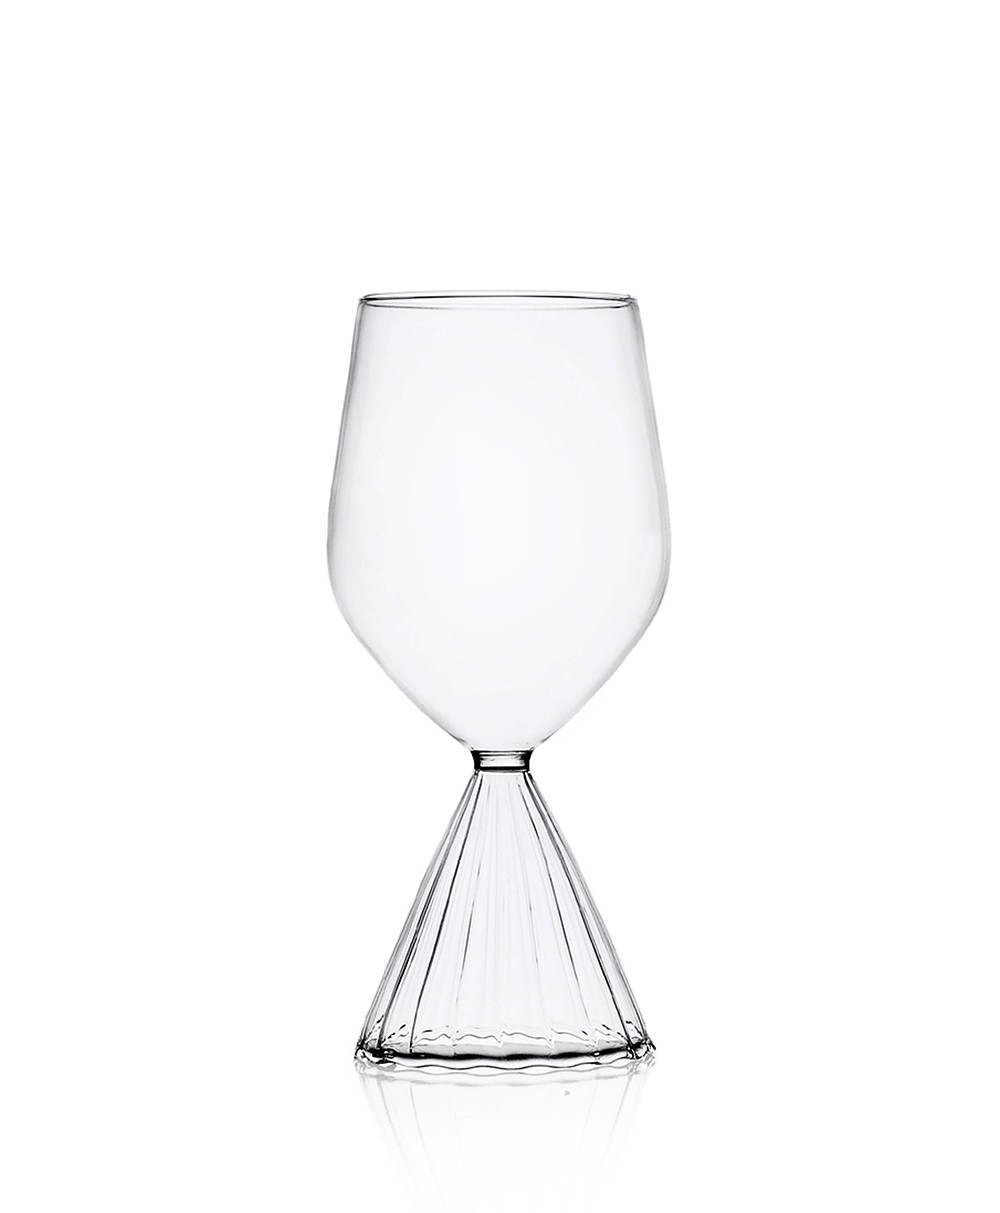 Produktbild "Tutu Weisweinglas" des Herstellers Ichendorf Milano im RAUM Conceptstore